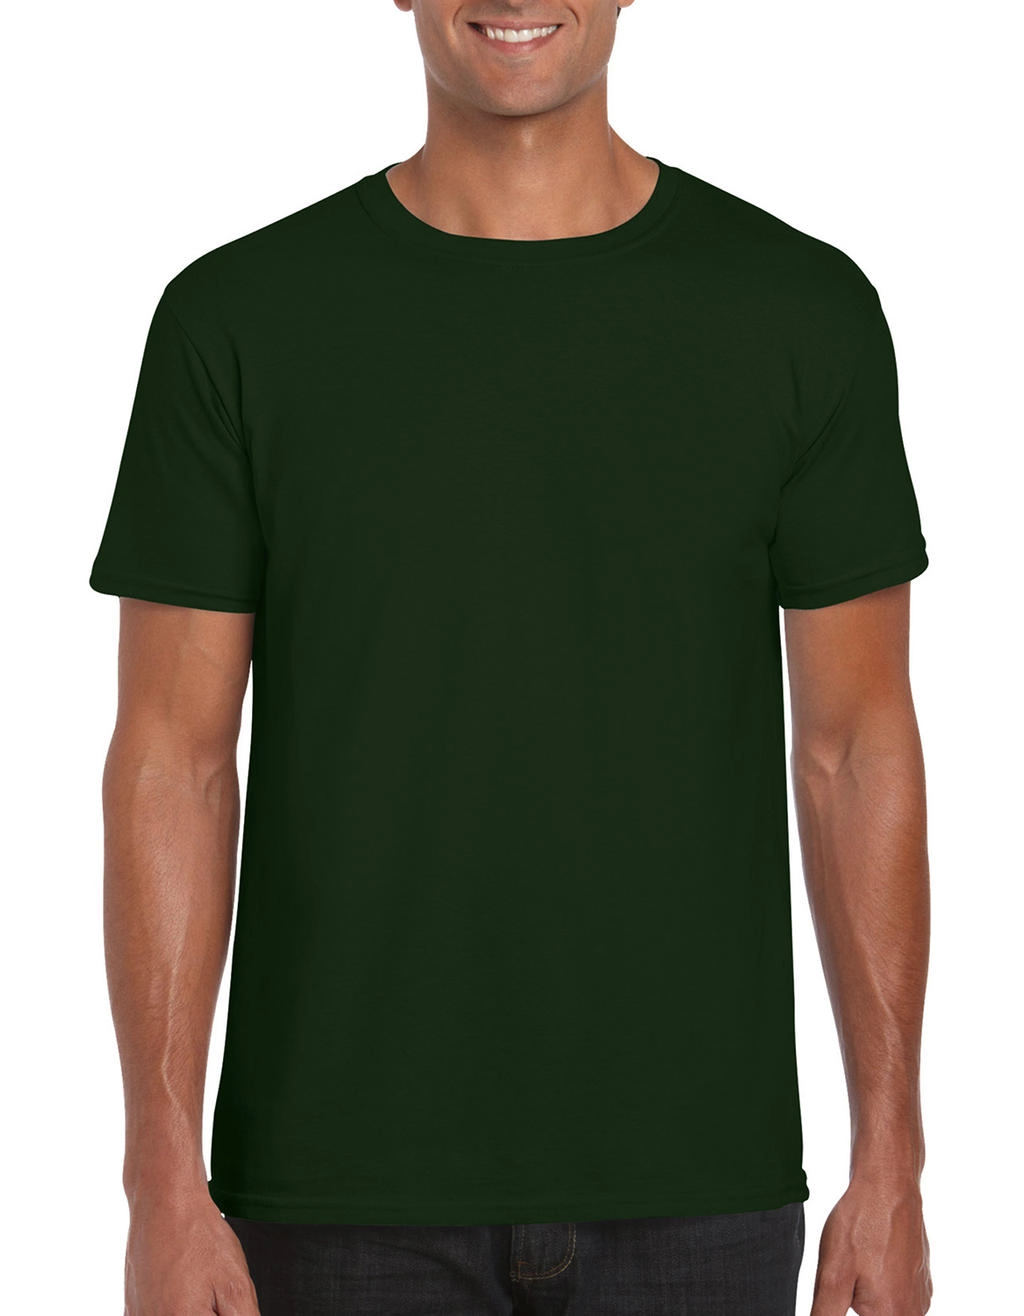 Softstyle® Ring Spun T-Shirt zum Besticken und Bedrucken in der Farbe Forest Green mit Ihren Logo, Schriftzug oder Motiv.